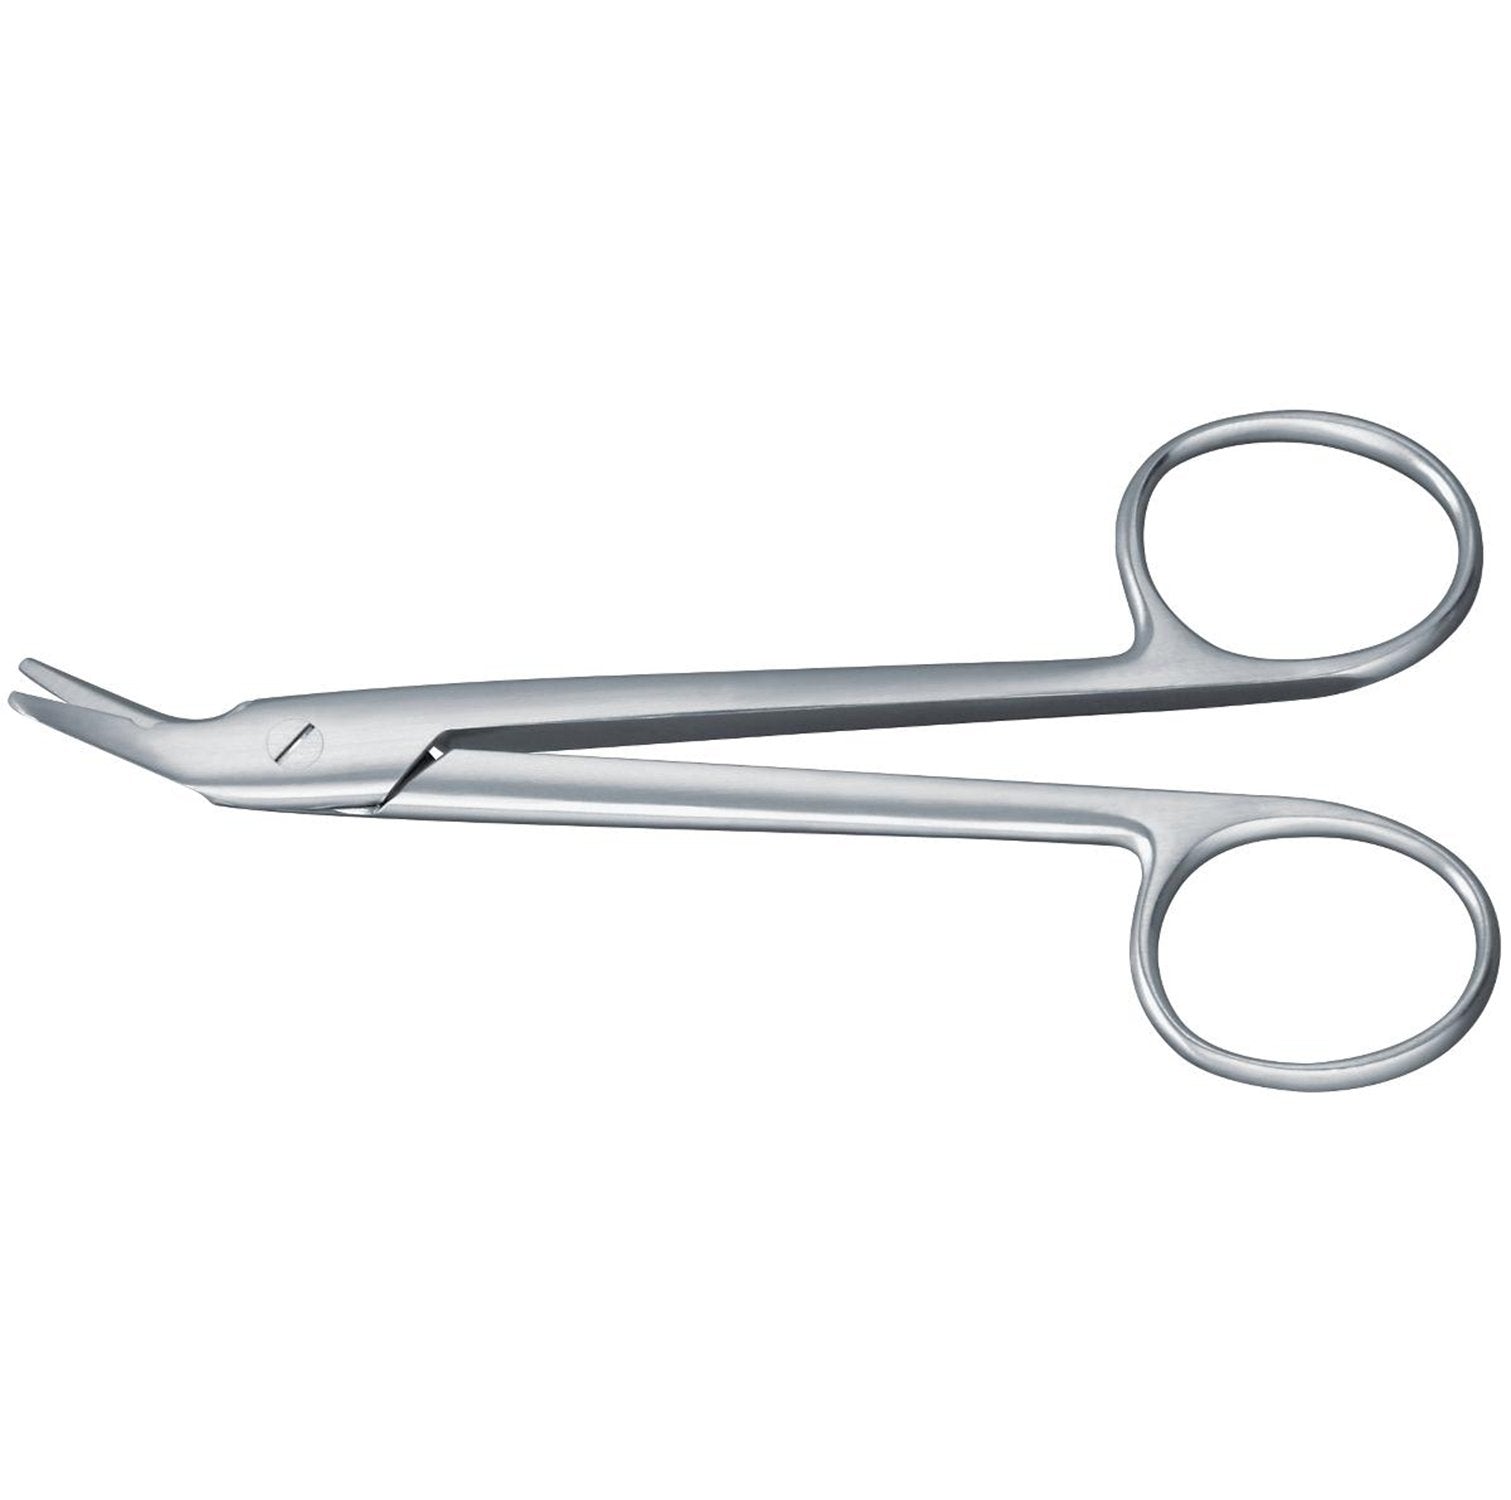 Wire-cutting Scissors